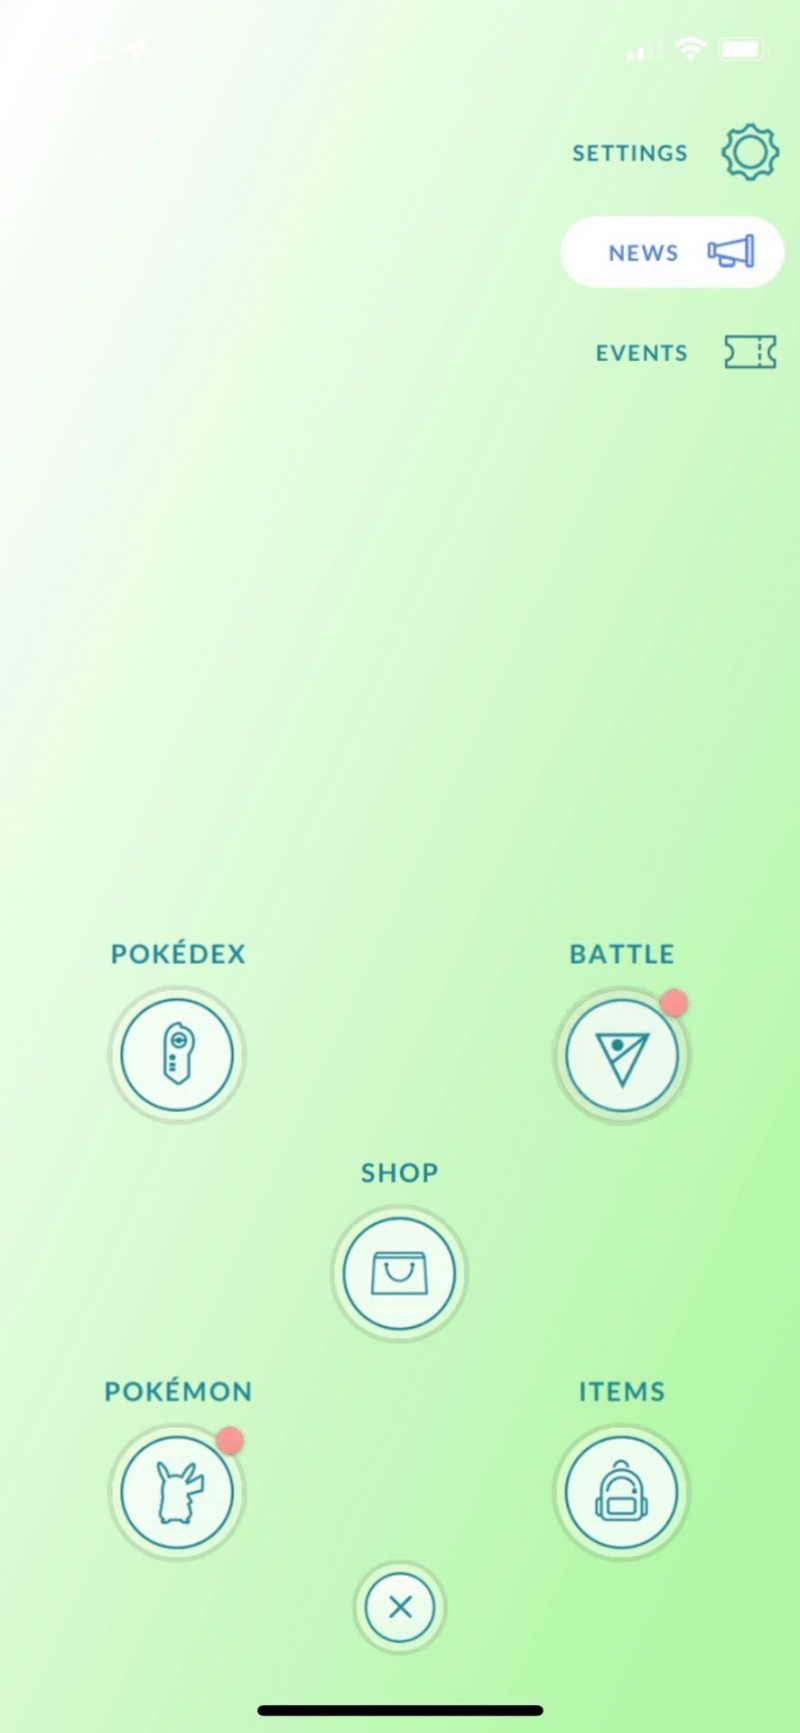   Poke Ball Plus ஐ Pokémon Go உடன் இணைக்கவும், மேல் வலது மூலையில் உள்ள கியர் பொத்தானை அழுத்தவும்